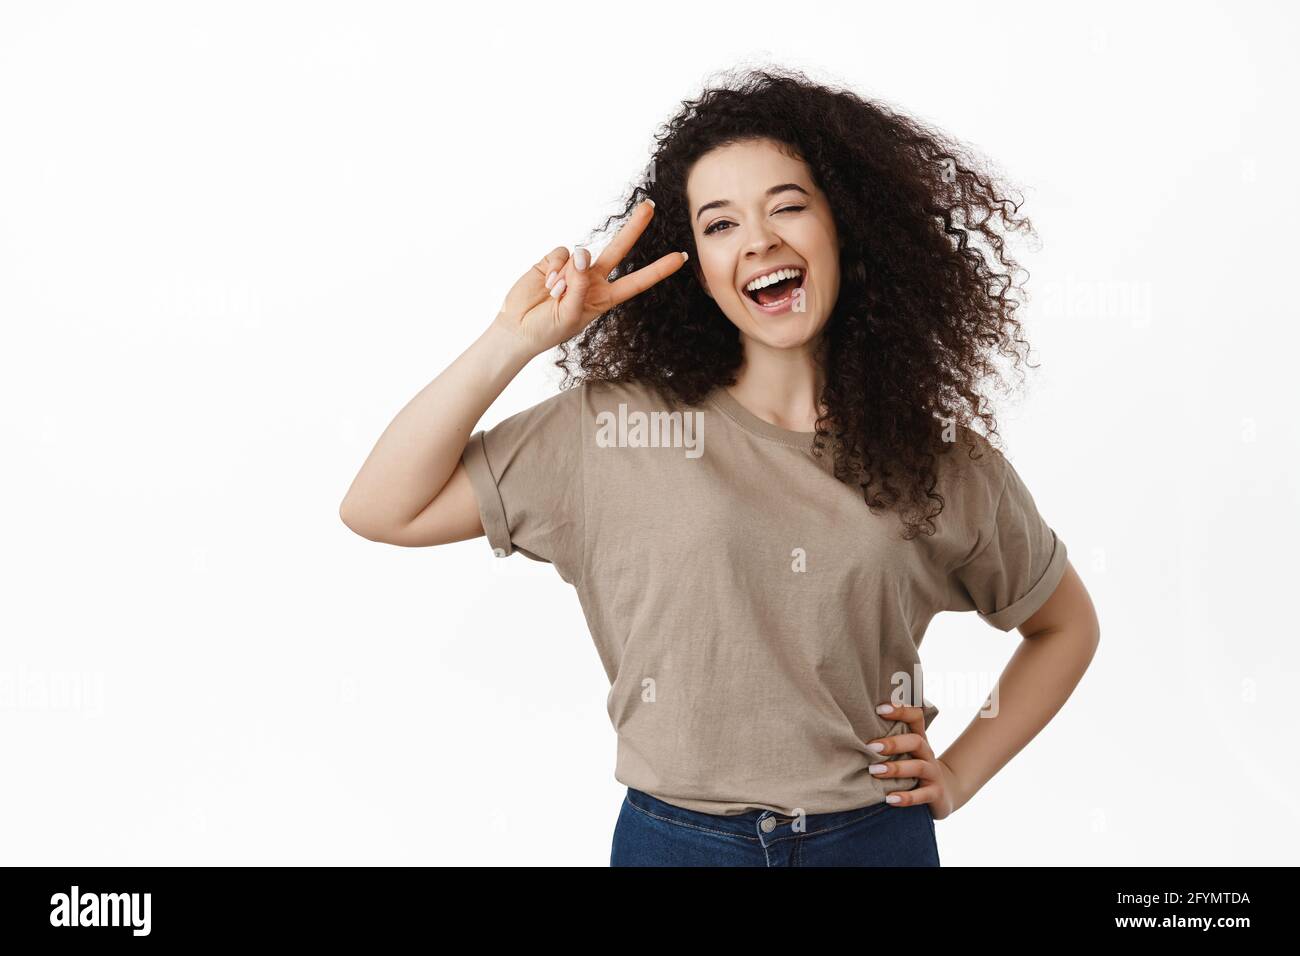 Portrait d'une femme brune heureuse et positive, riant et souriant, montrant le signe de la paix v près de l'œil, pose de kawaii, debout sur fond blanc Banque D'Images